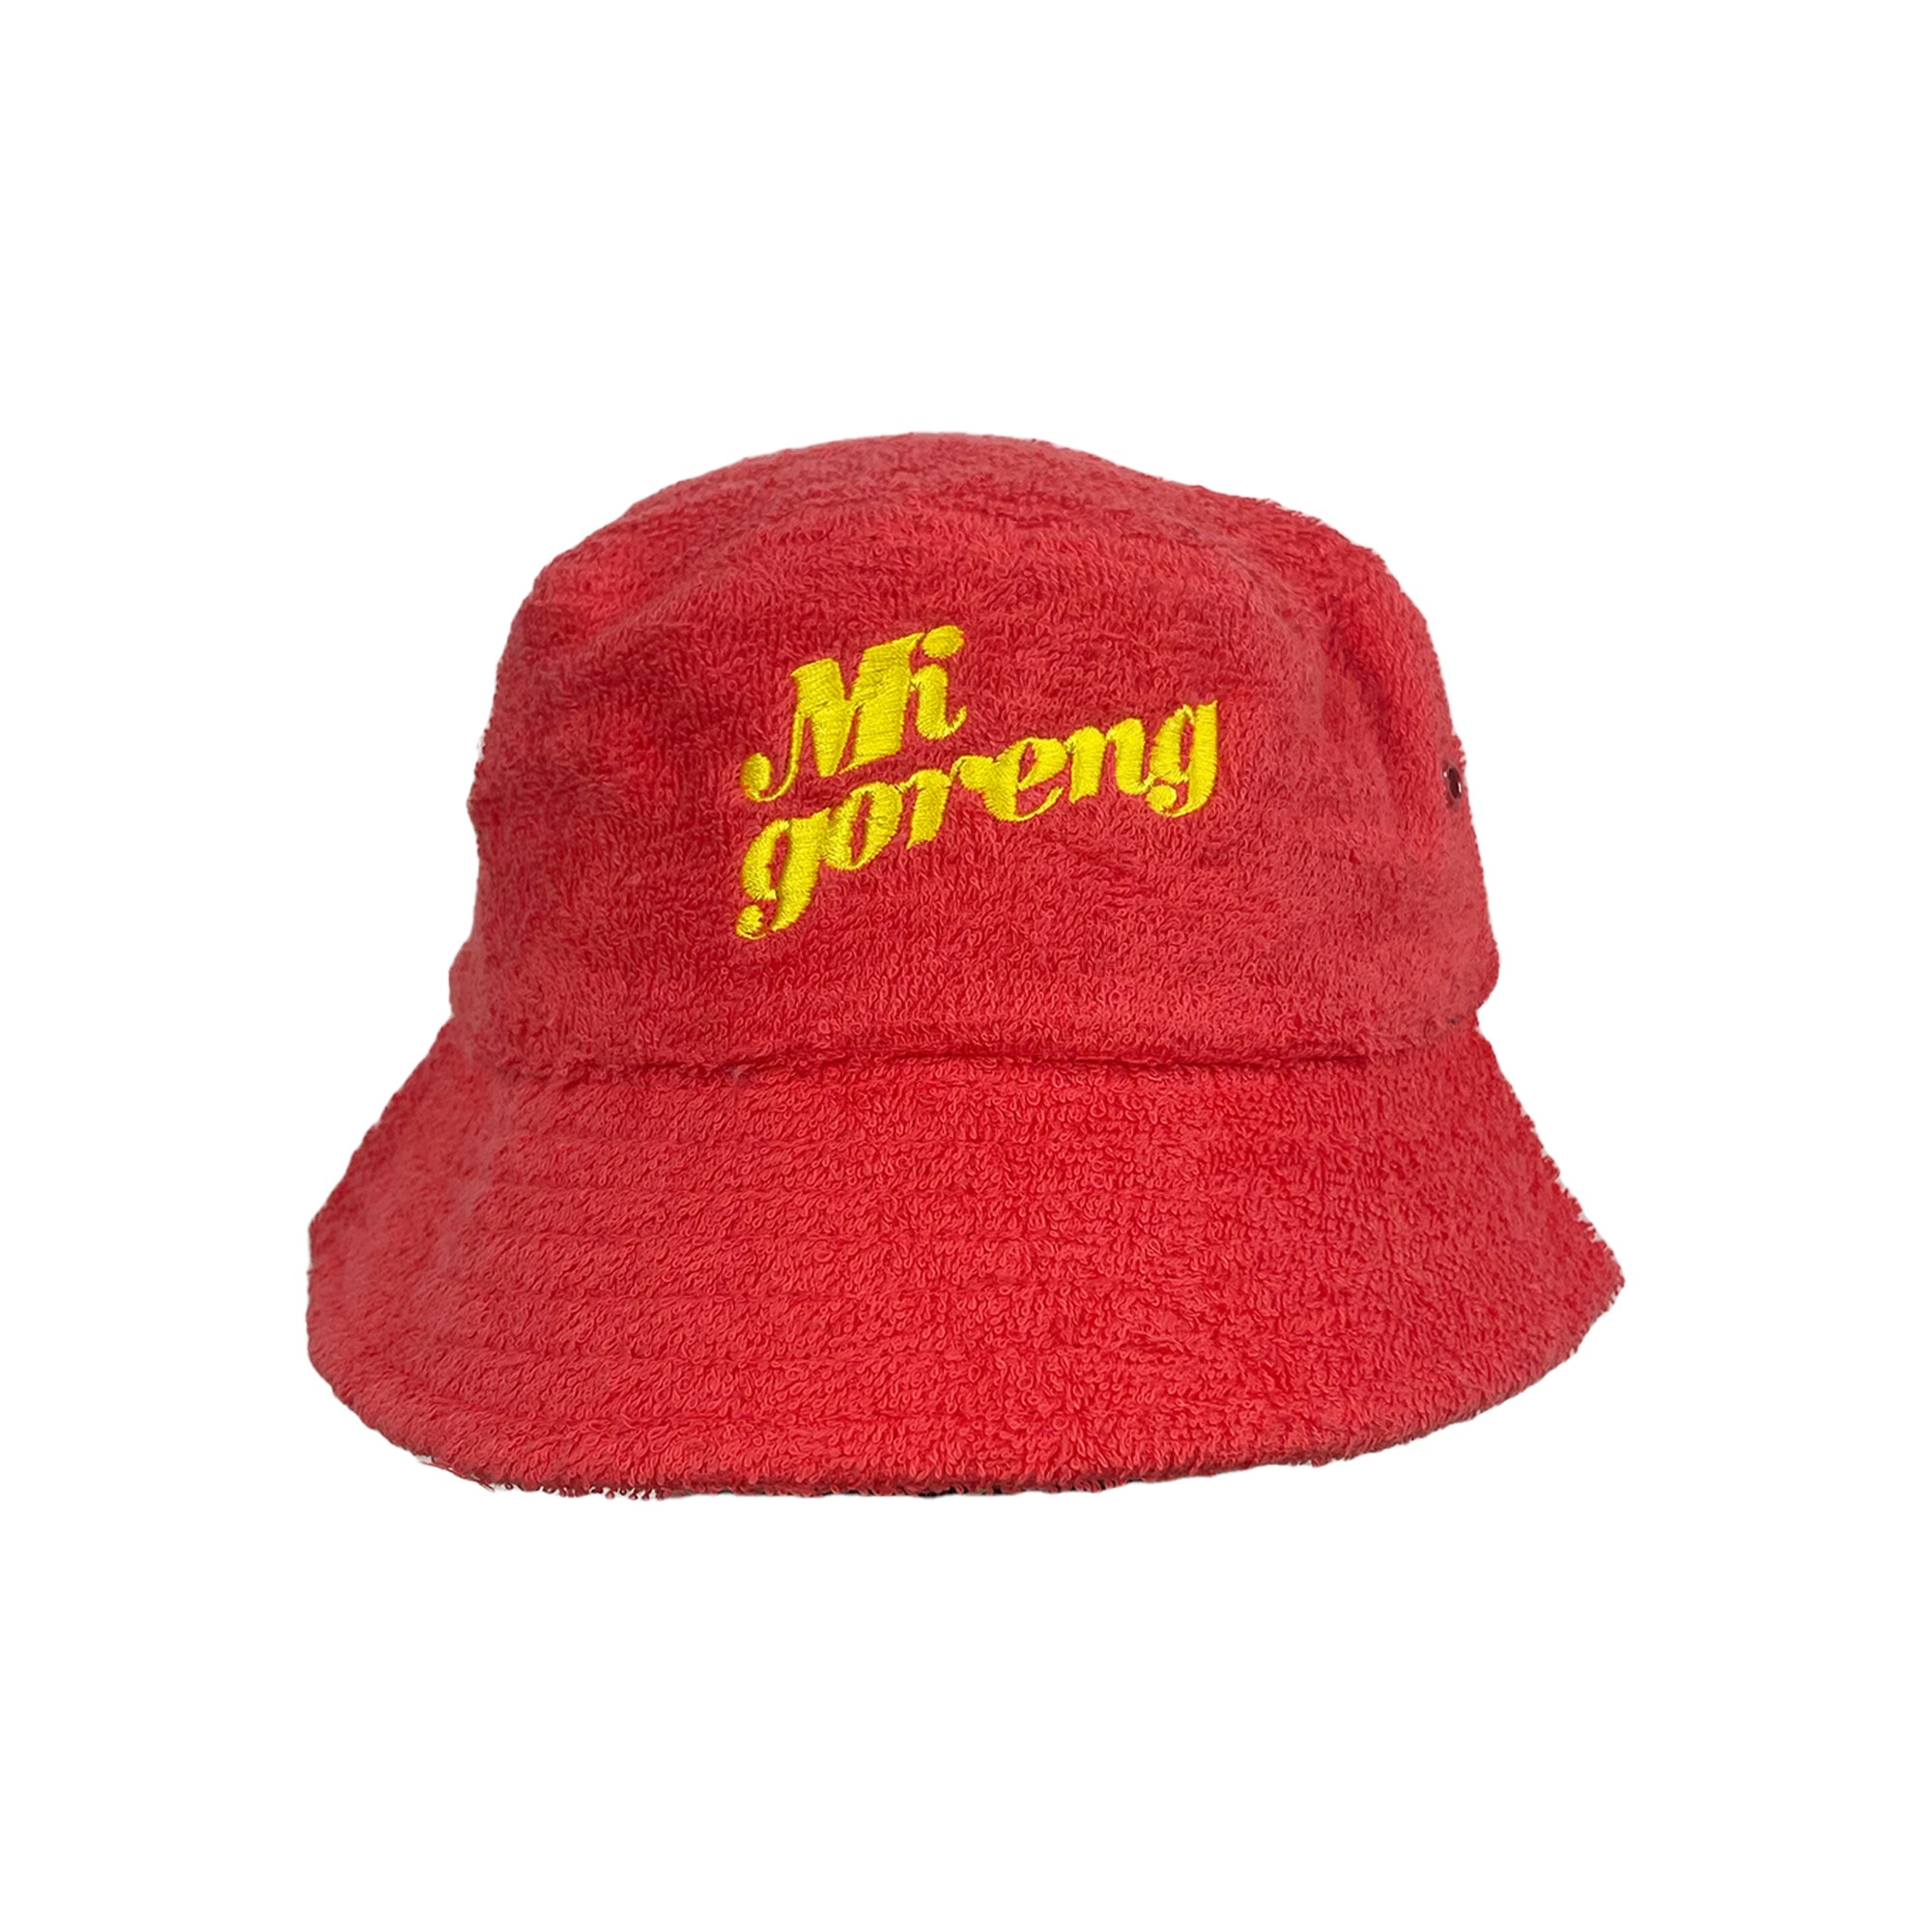 MI GORENG TERRY TOWEL BUCKET HAT RED